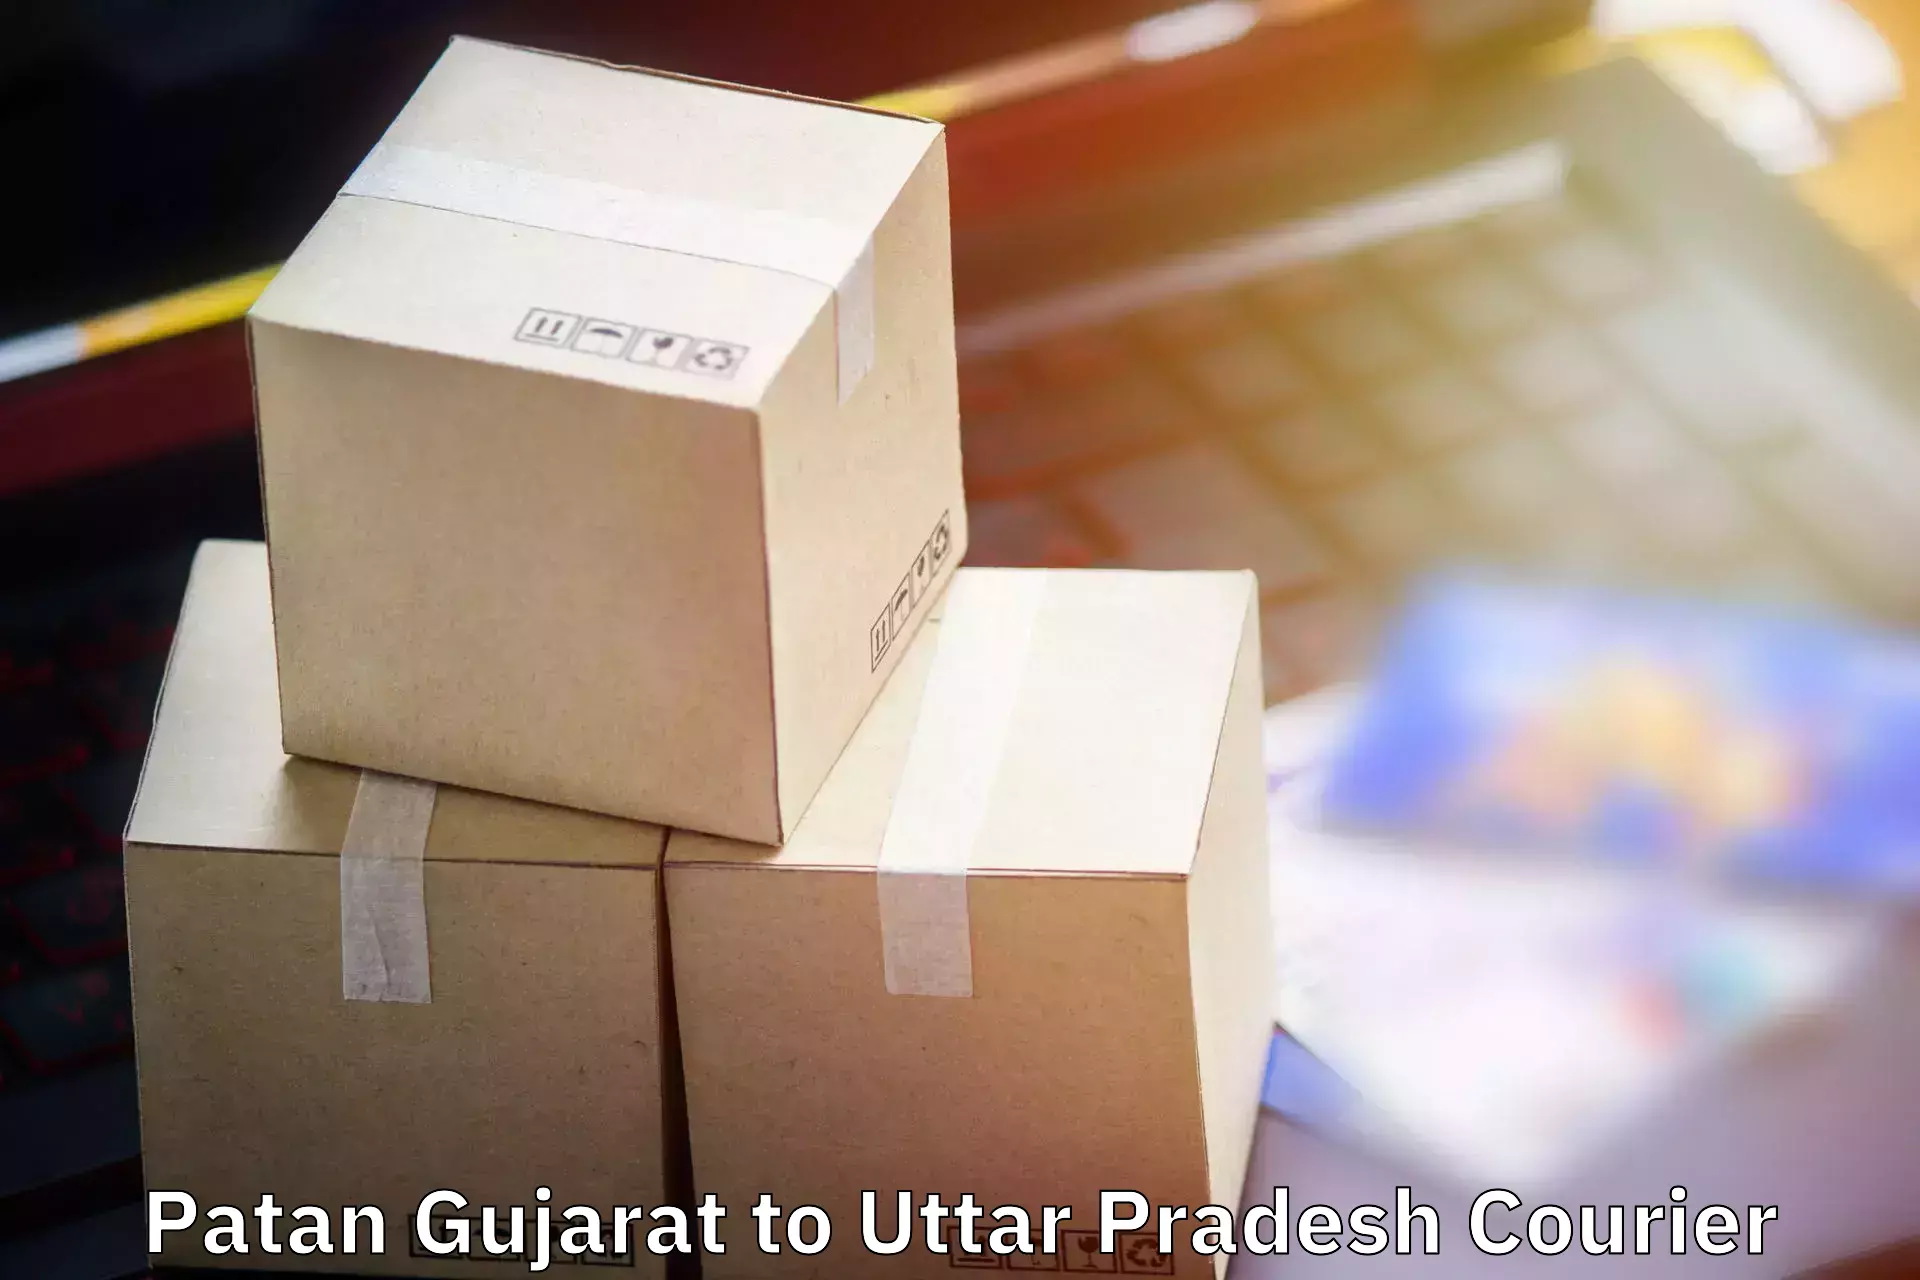 Outsize baggage transport Patan Gujarat to Soraon